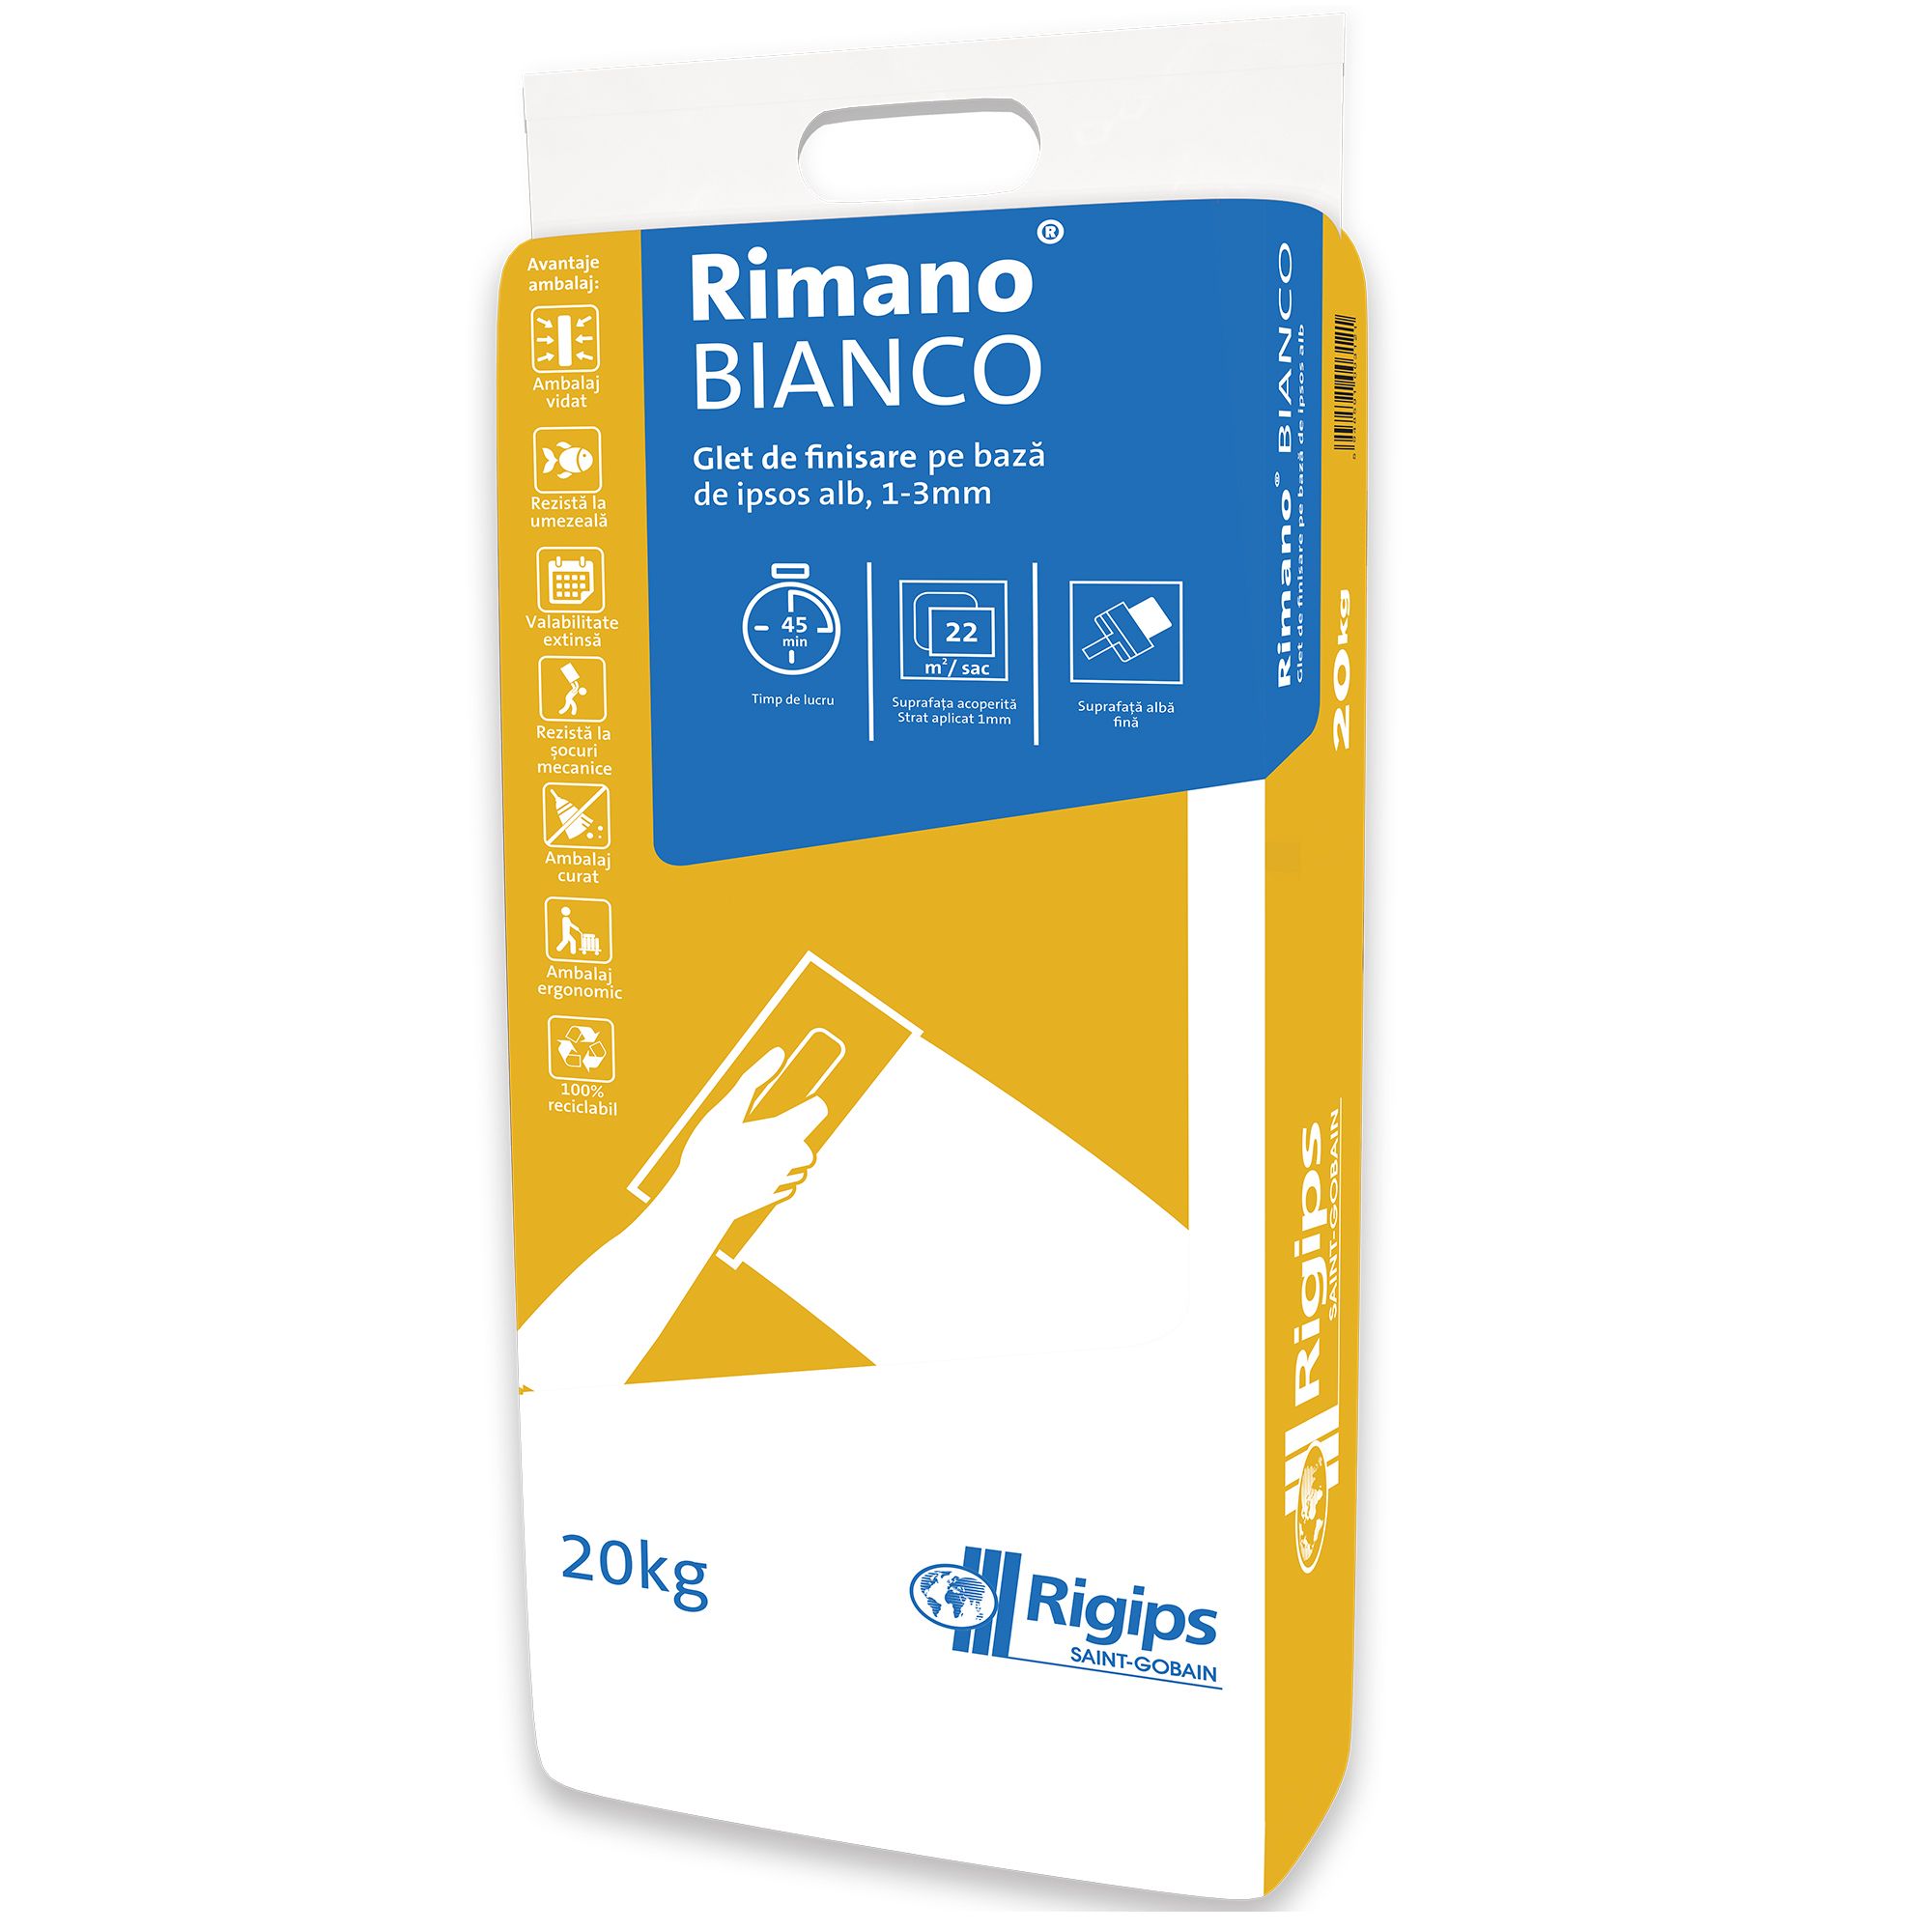 Plasters - Finishing glet based on white plaster 1-3mm Rigips Rimano Bianco 20kg, https:maxbau.ro